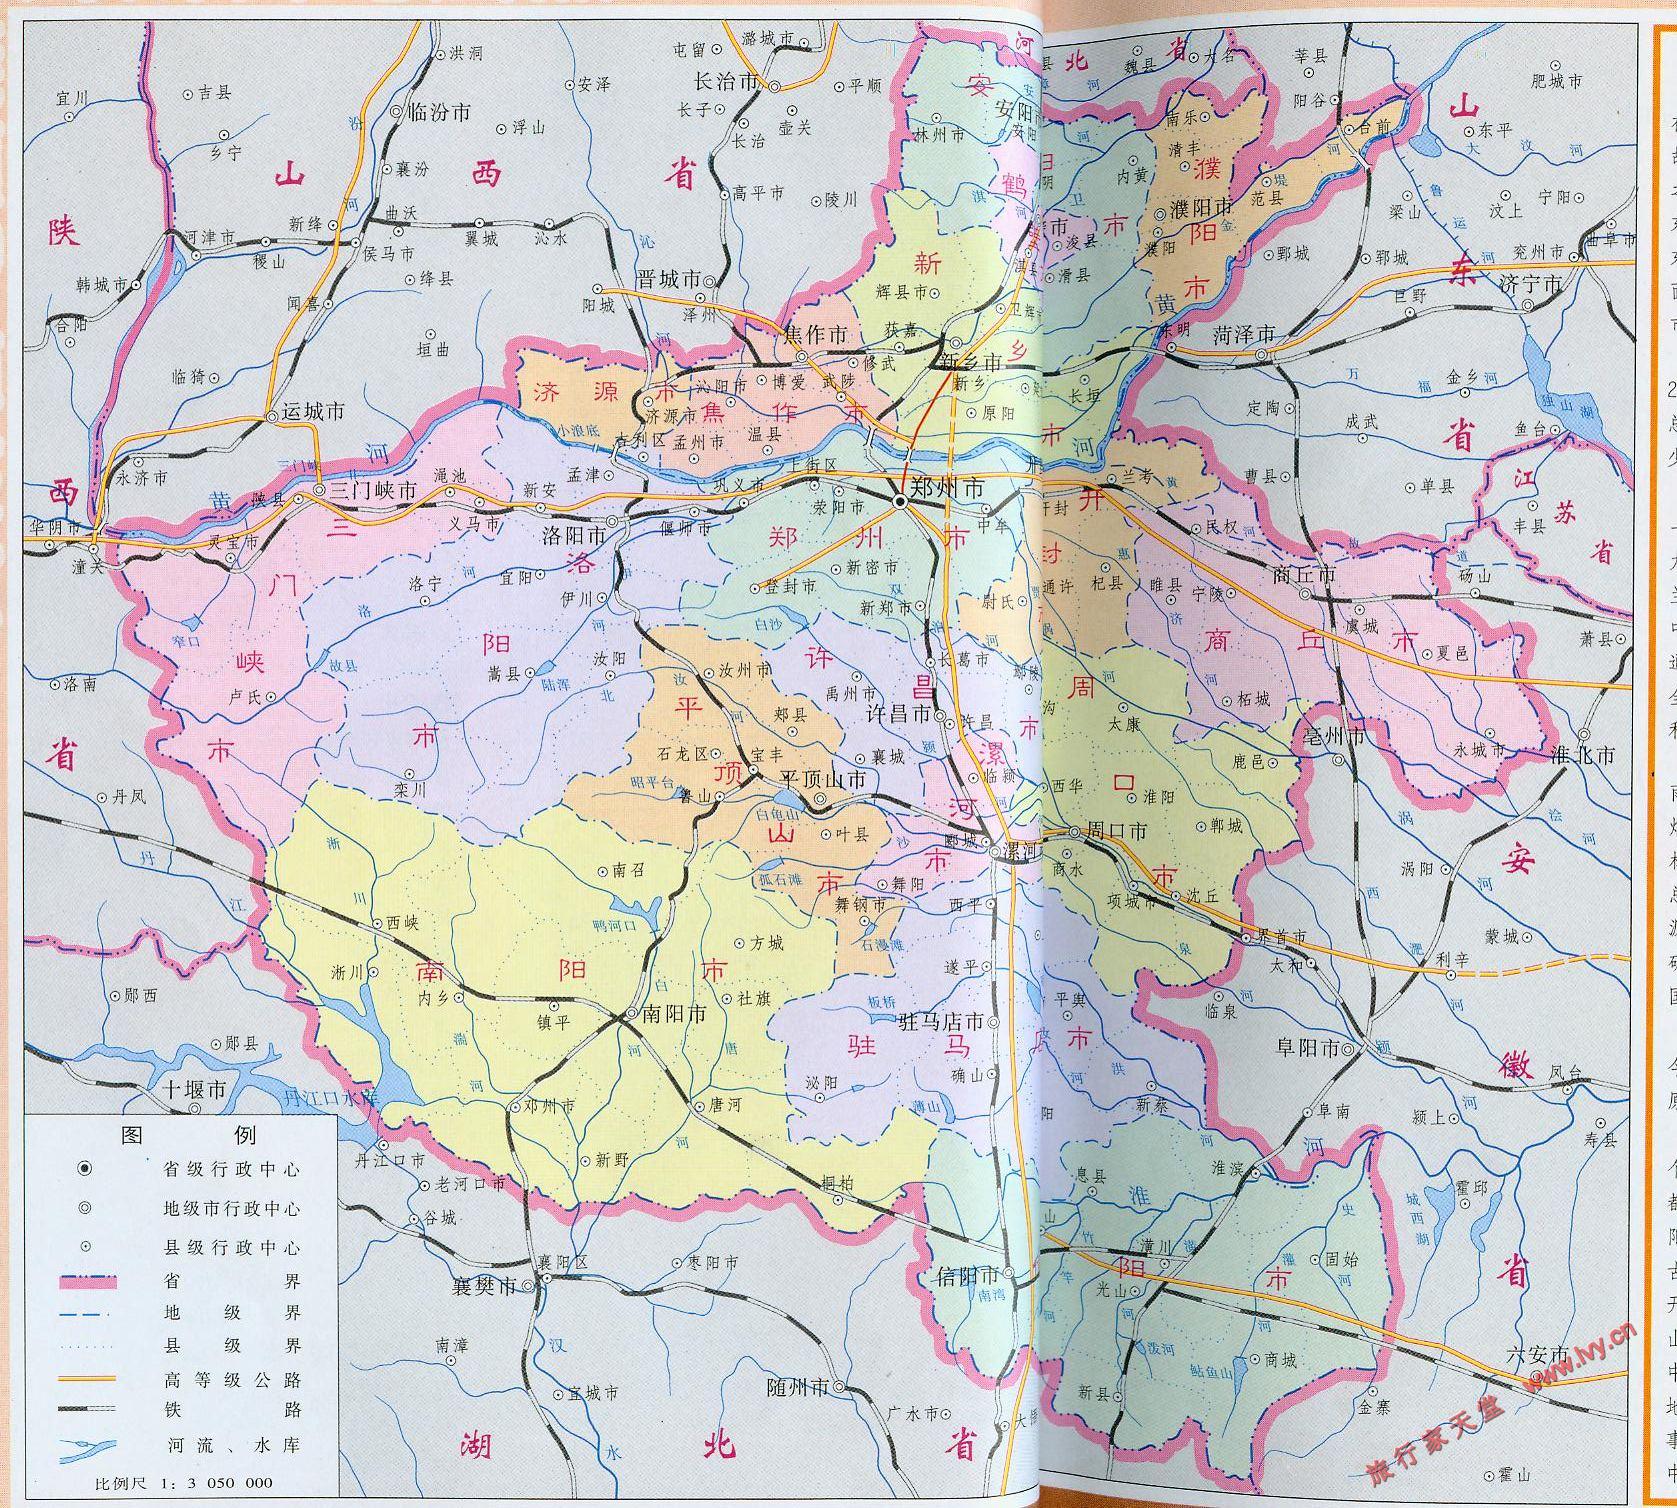 河南省地图(1:680000)图片